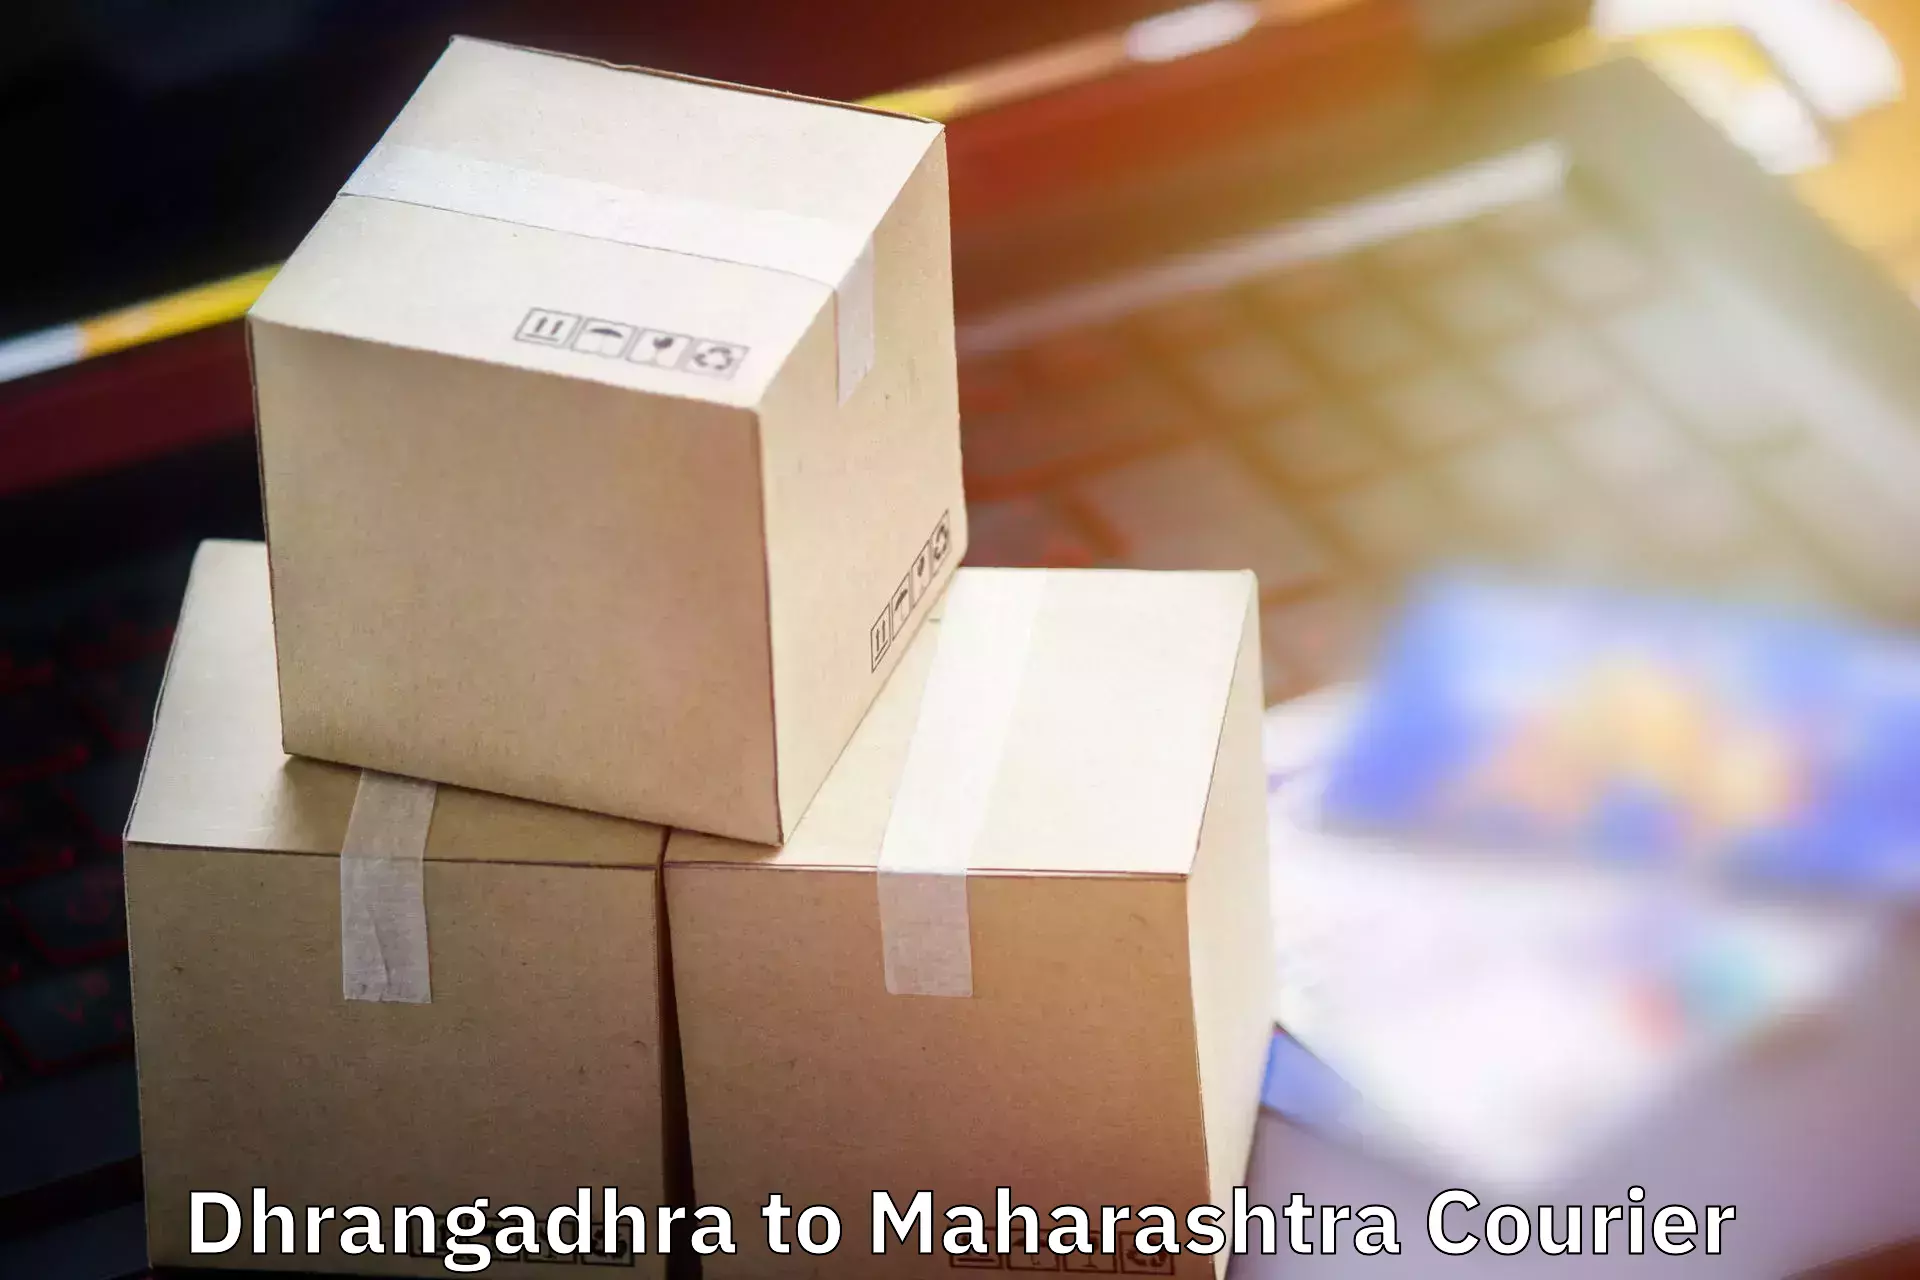 Luggage transport logistics Dhrangadhra to Navi Mumbai